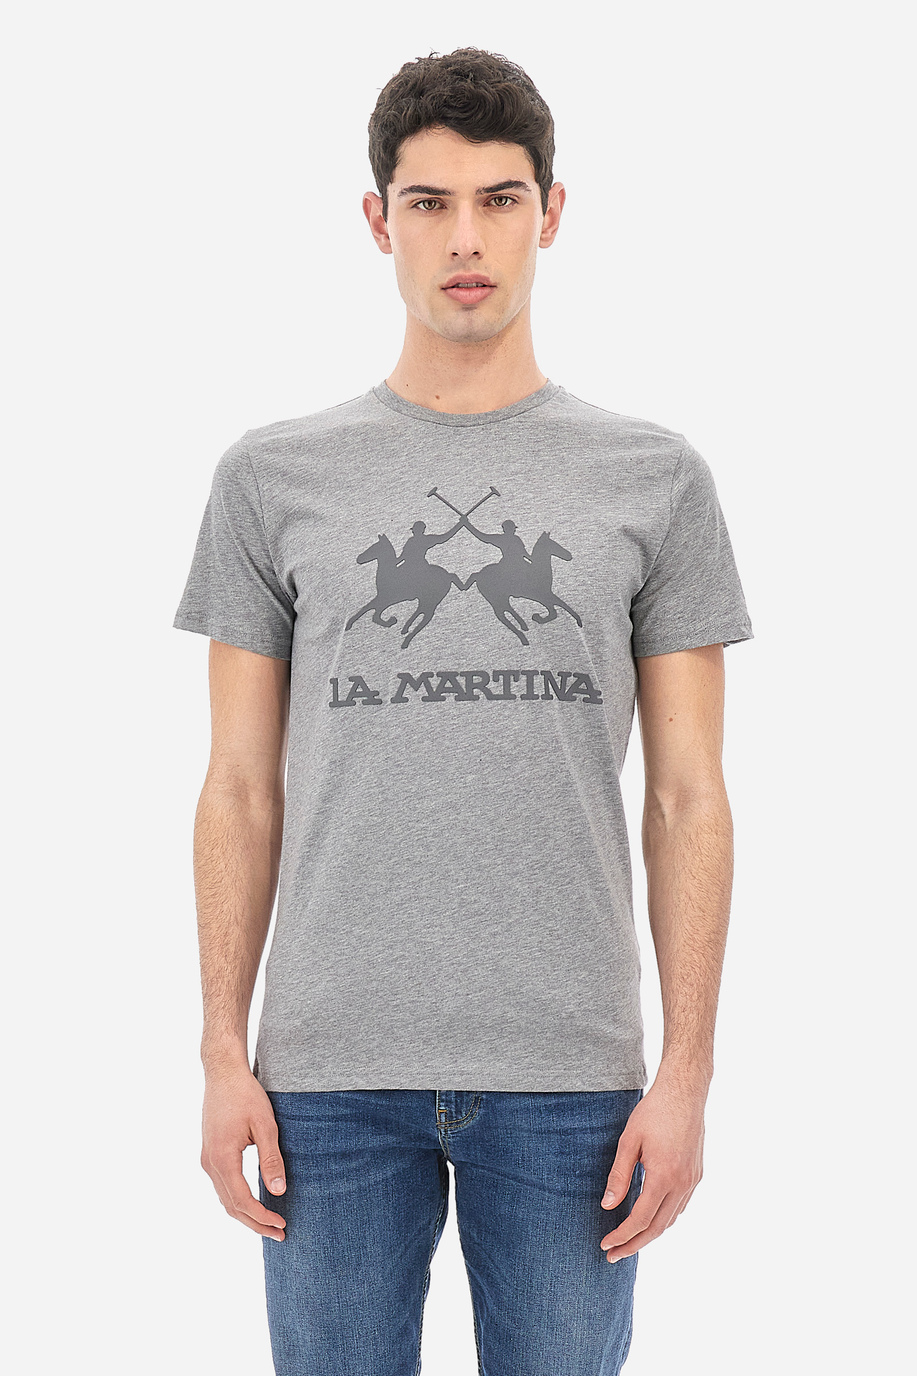 Men's T-shirts in a regular fit - Moreno | La Martina - Official Online Shop